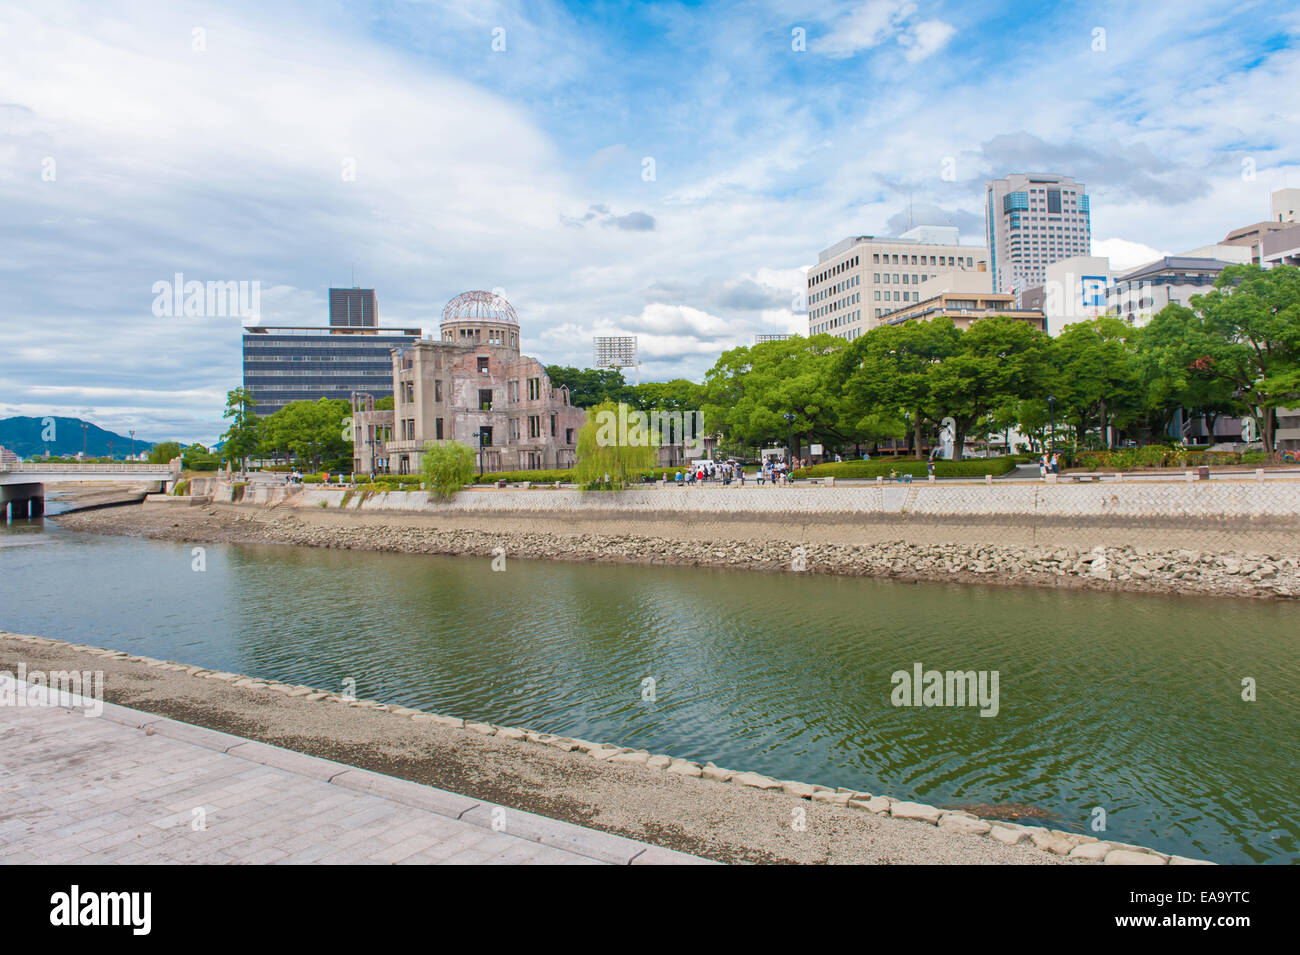 Hiroshima Peace Memorial - Genbaku atomic bomb dome, Japan Stock Photo